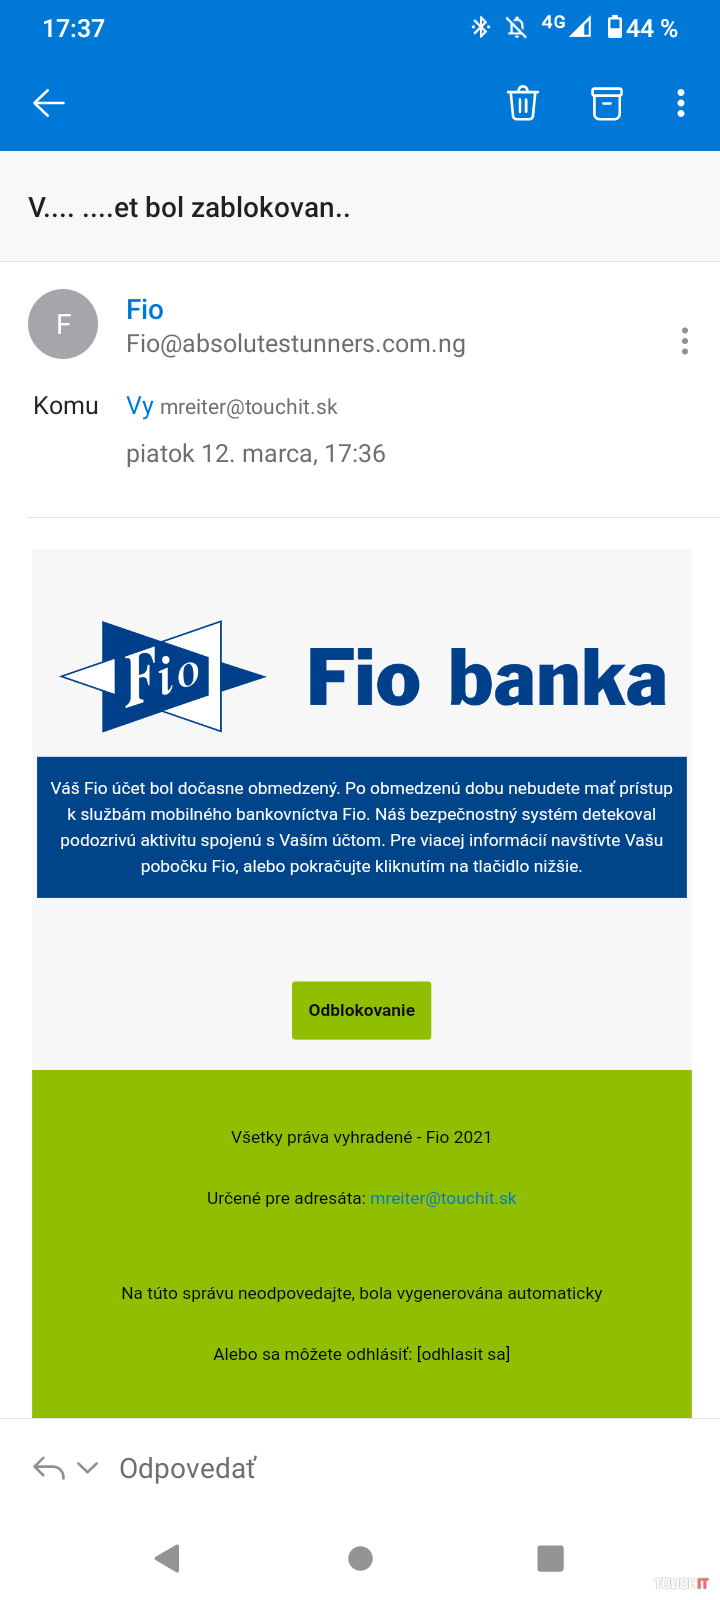 Email tváraci sa ako Fio banka.